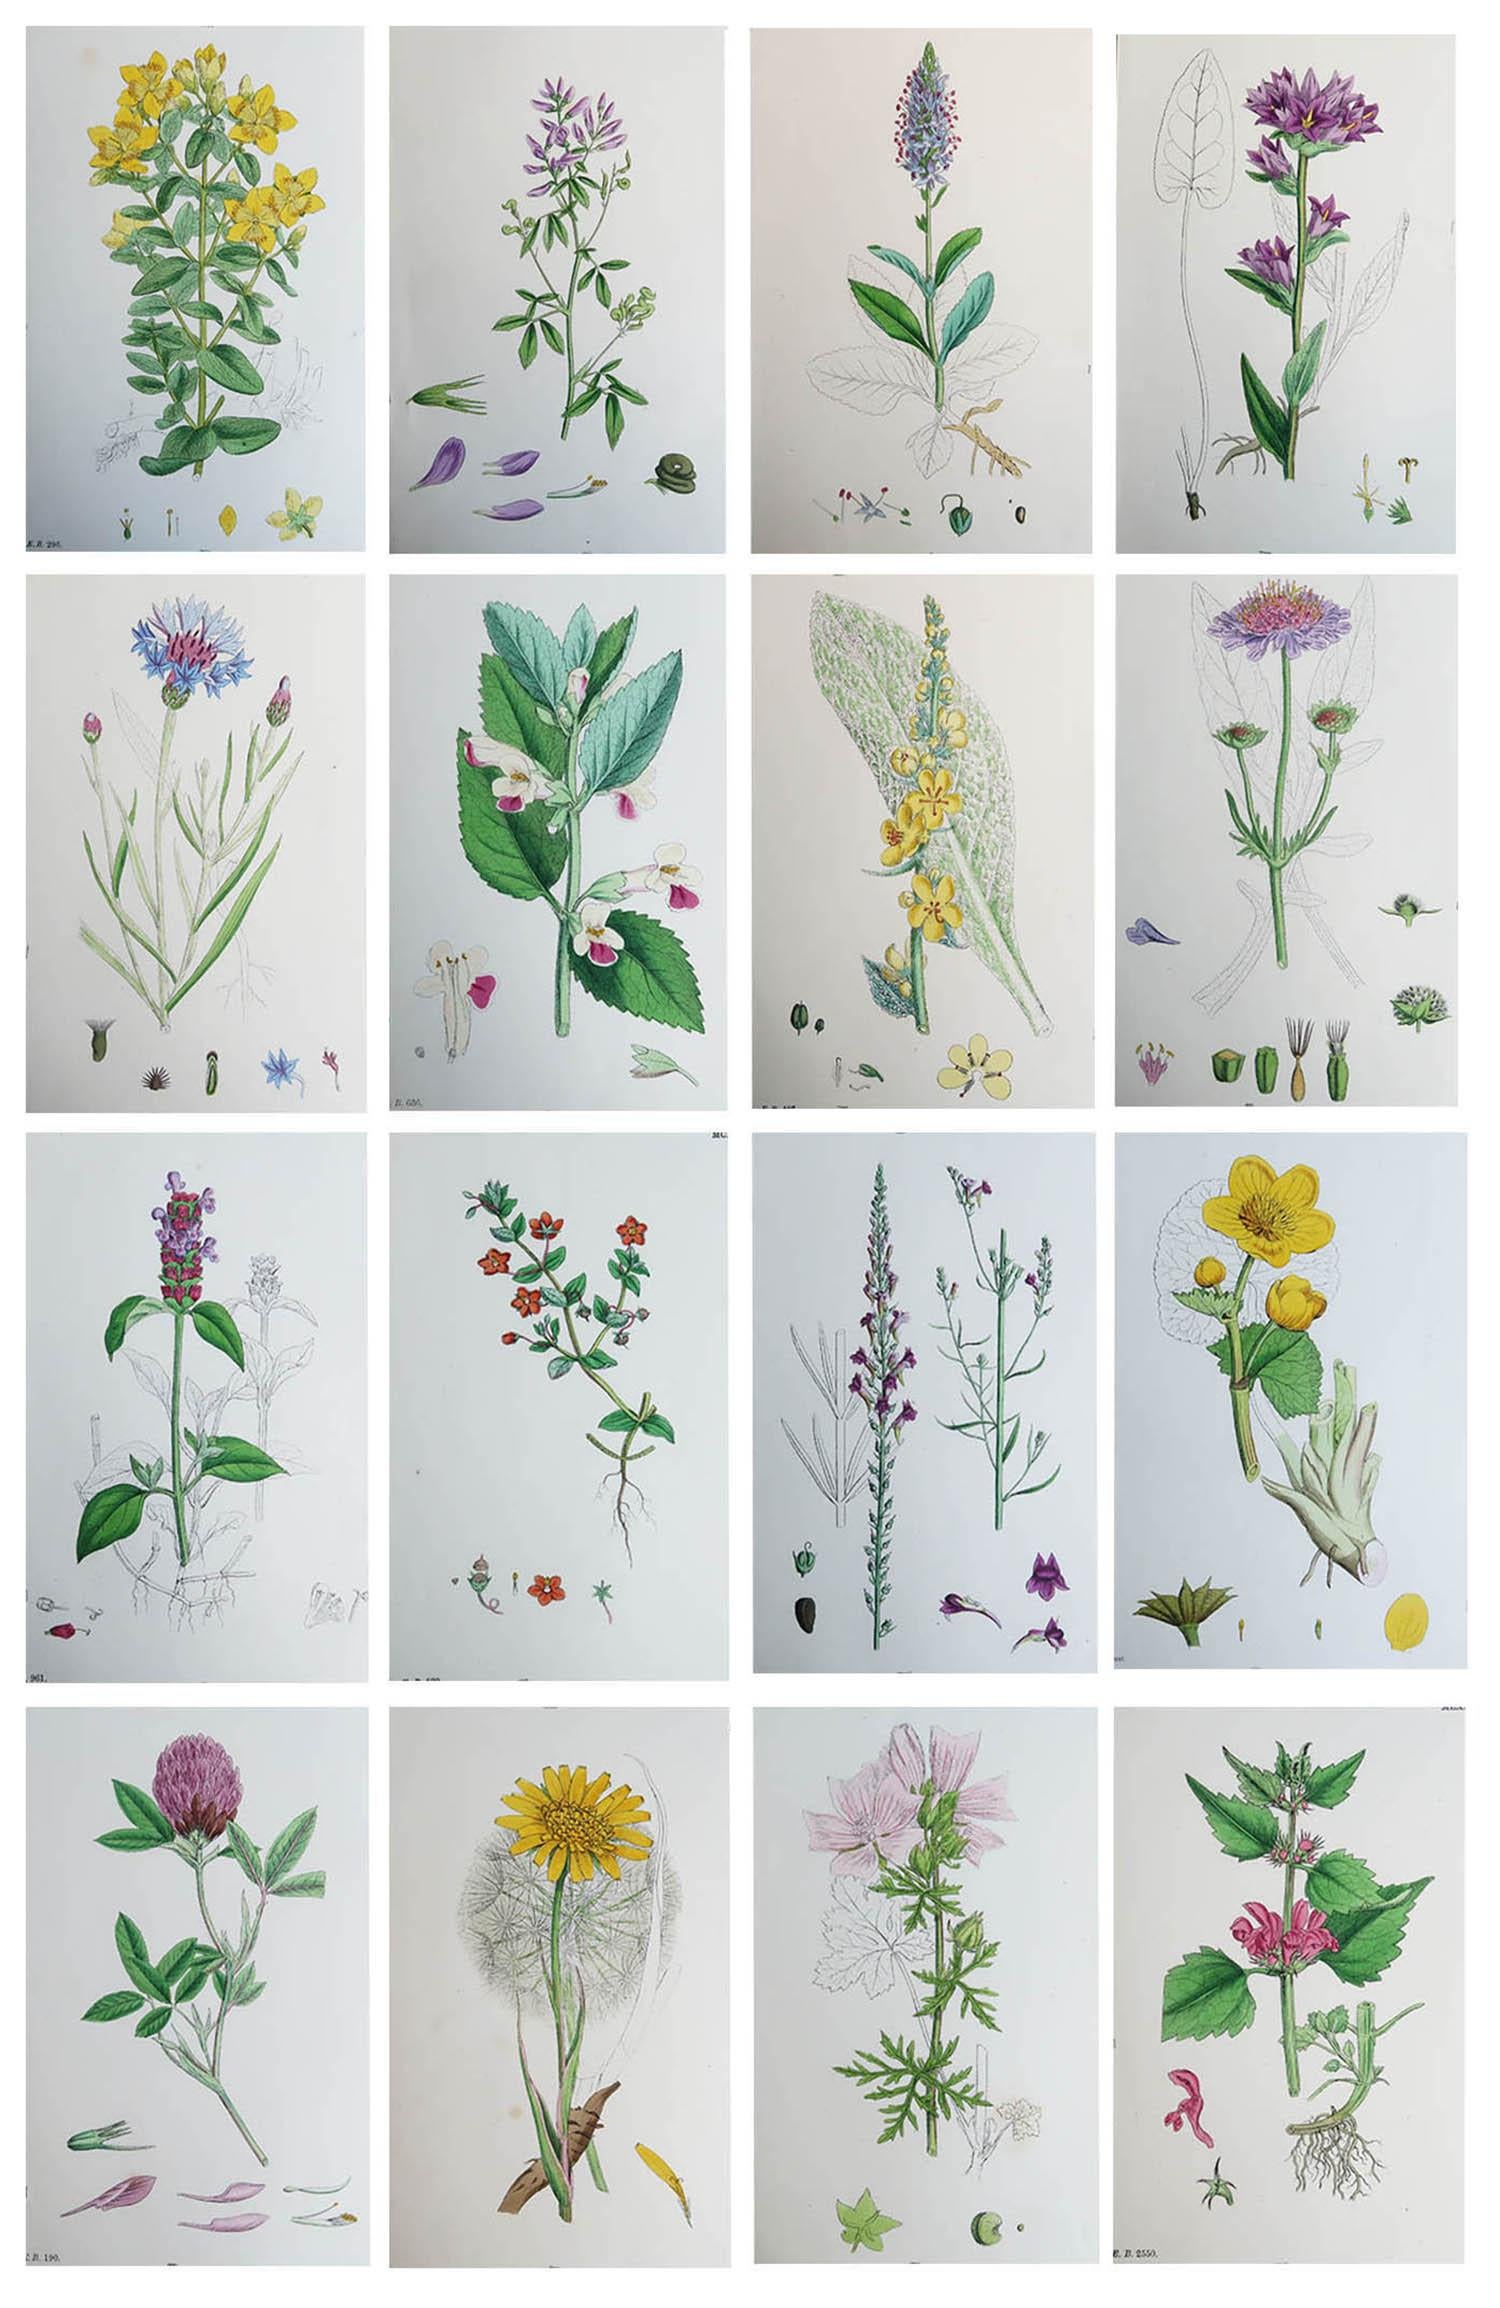 Merveilleux ensemble de 16 impressions botaniques

Lithographies d'après les dessins botaniques originaux de Hooker.

Couleur originale

Publié, vers 1850

Non encadré.

La mesure donnée est pour une impression.

